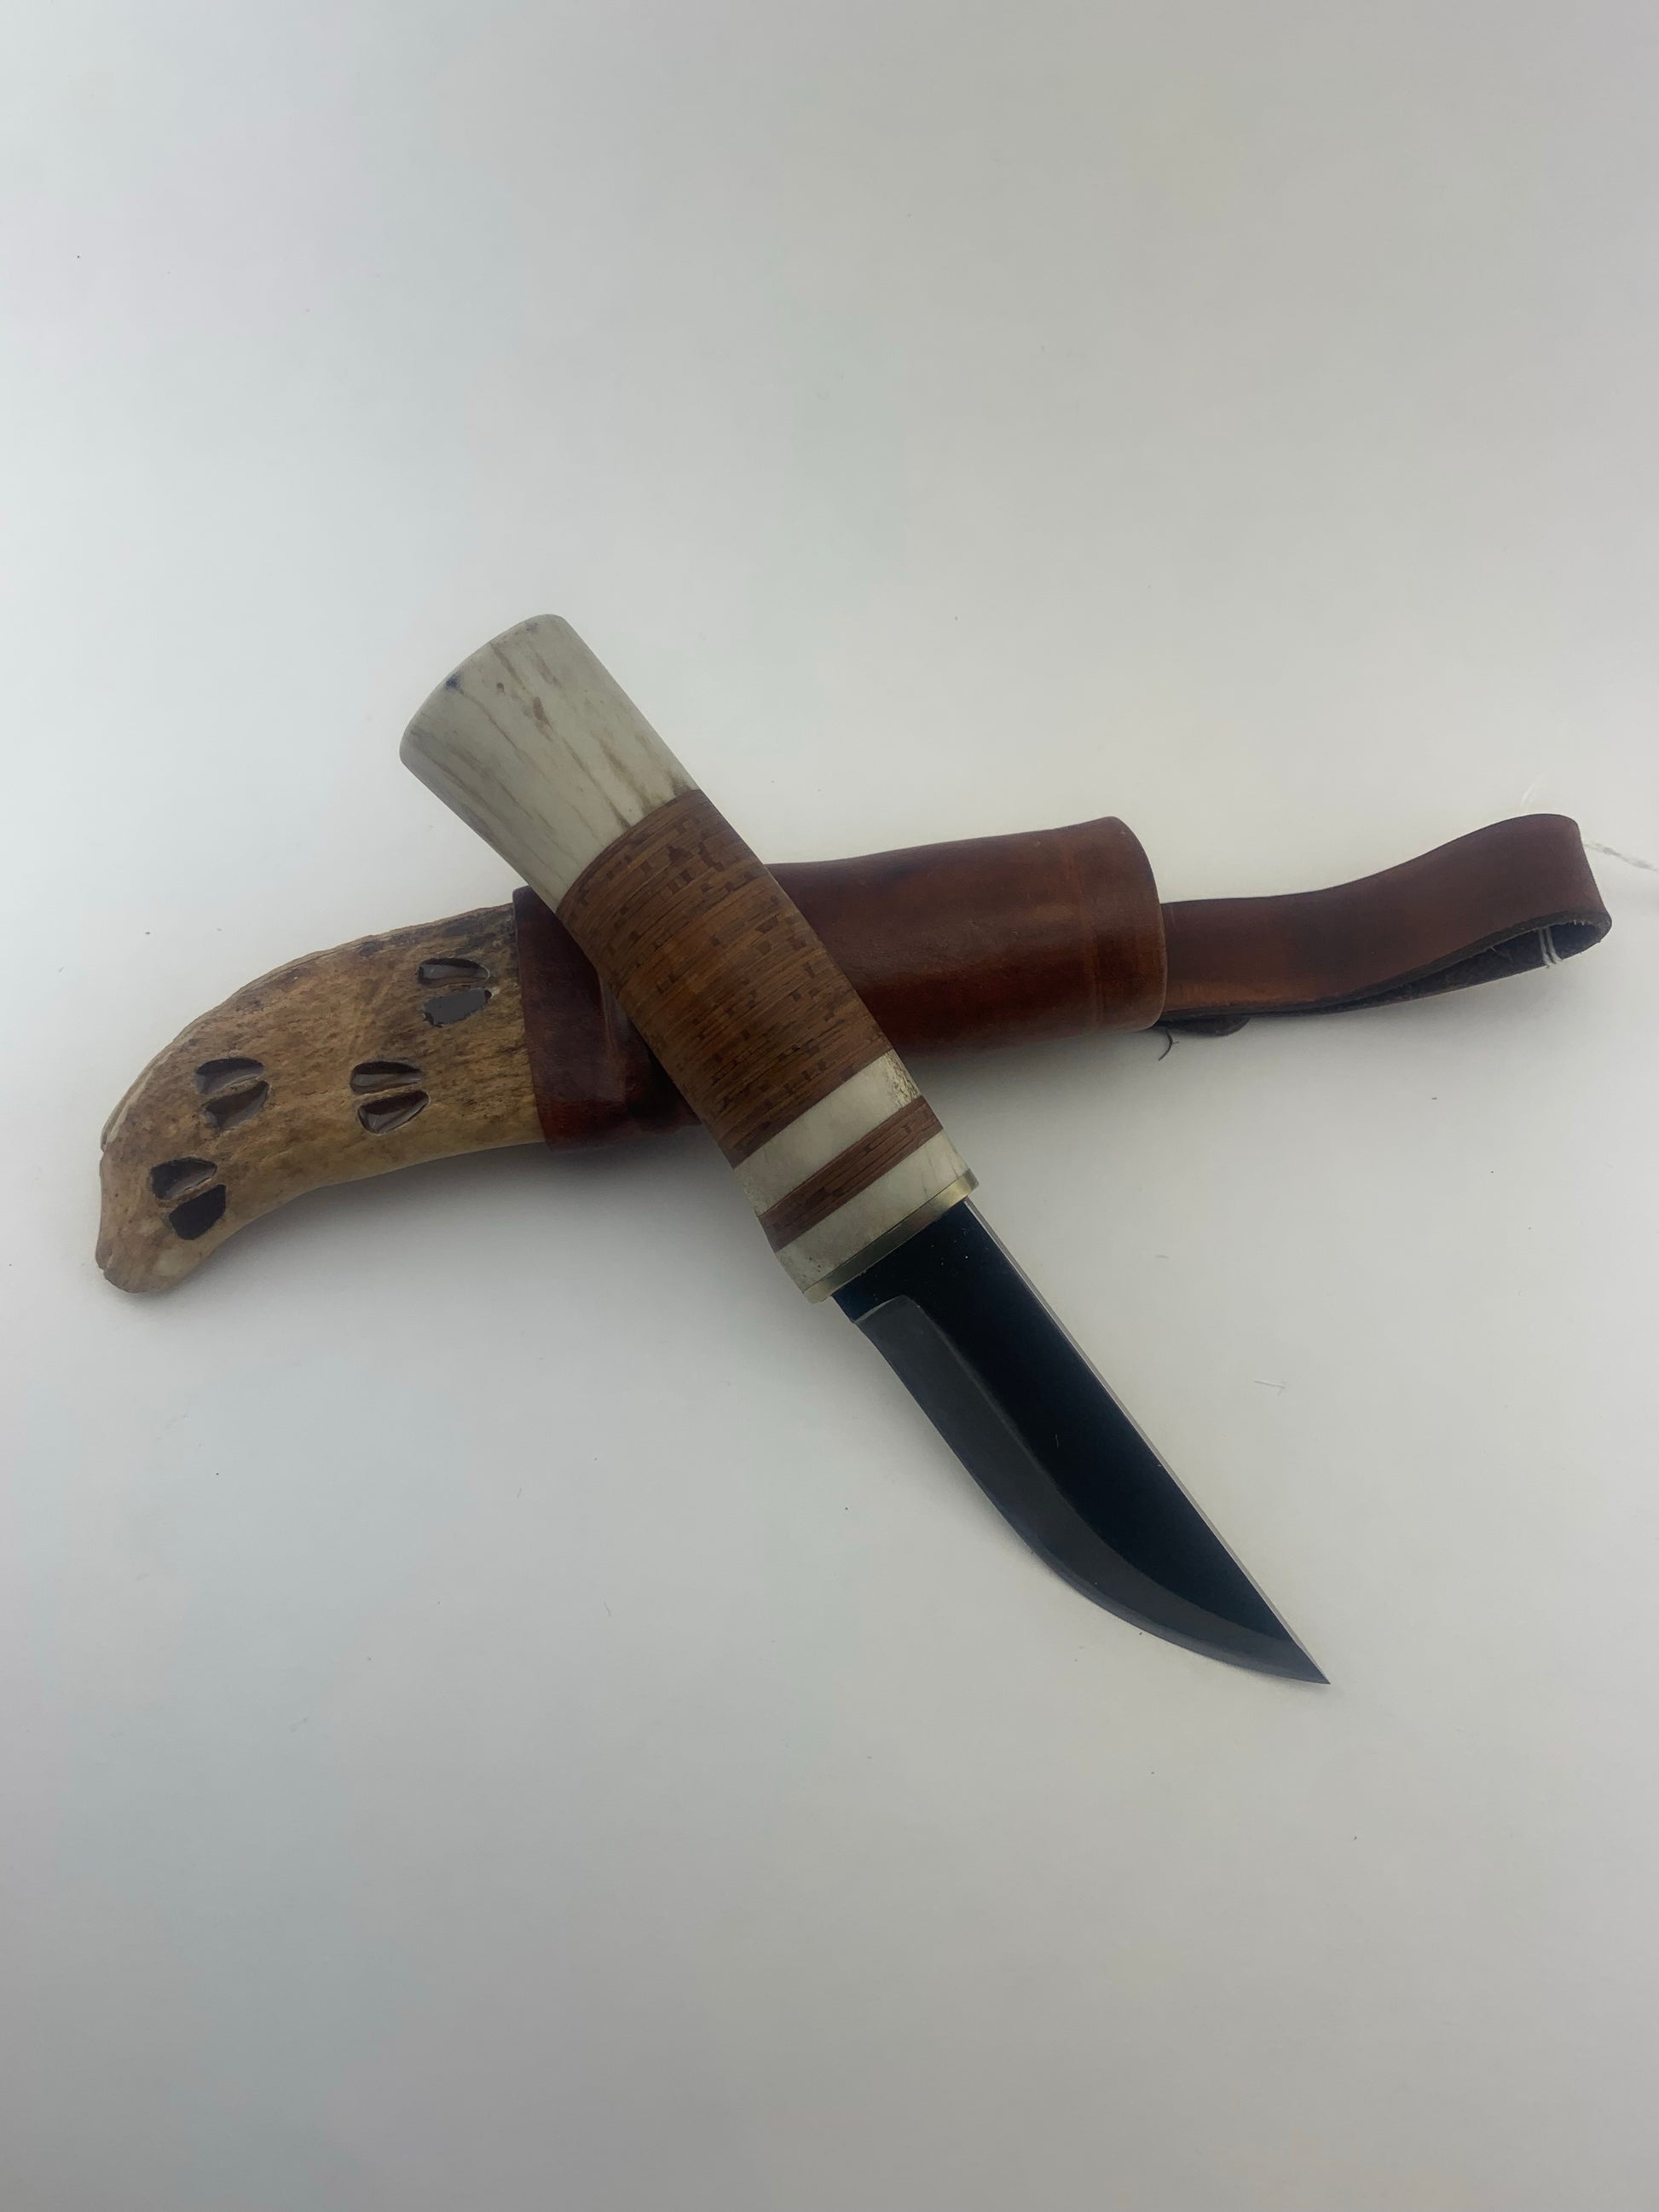 R.Nurmi Custom Puukko Bushcraft Knives